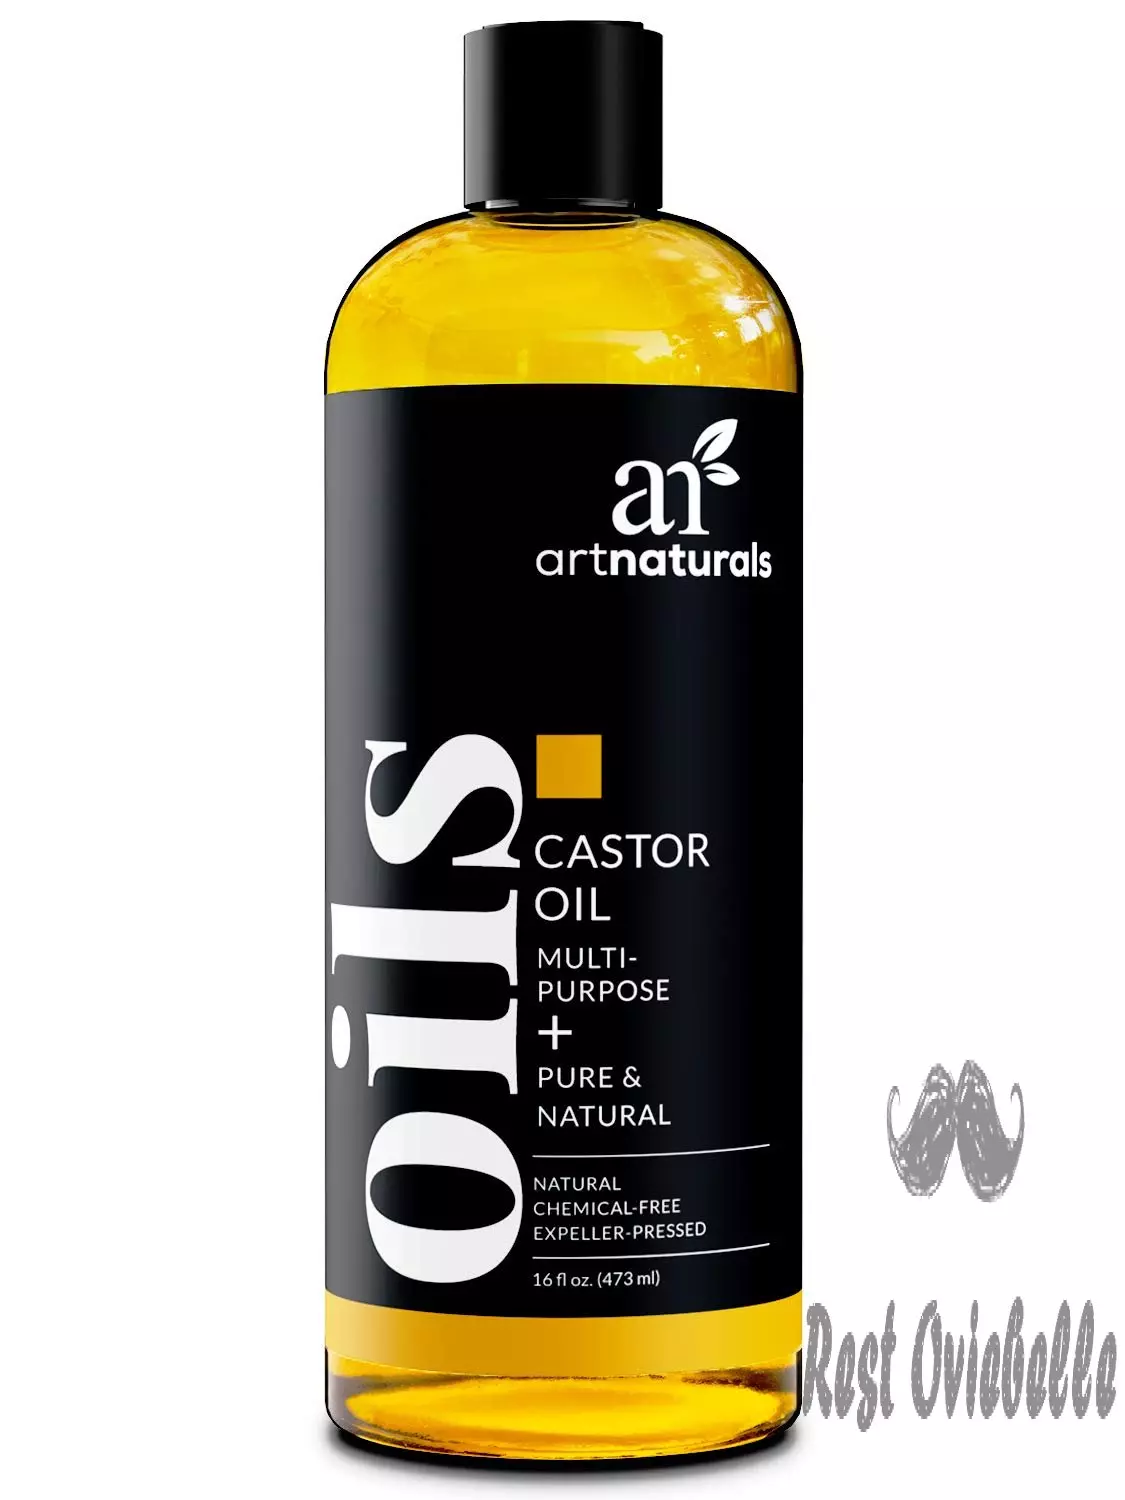 Artnaturals Castor Oil